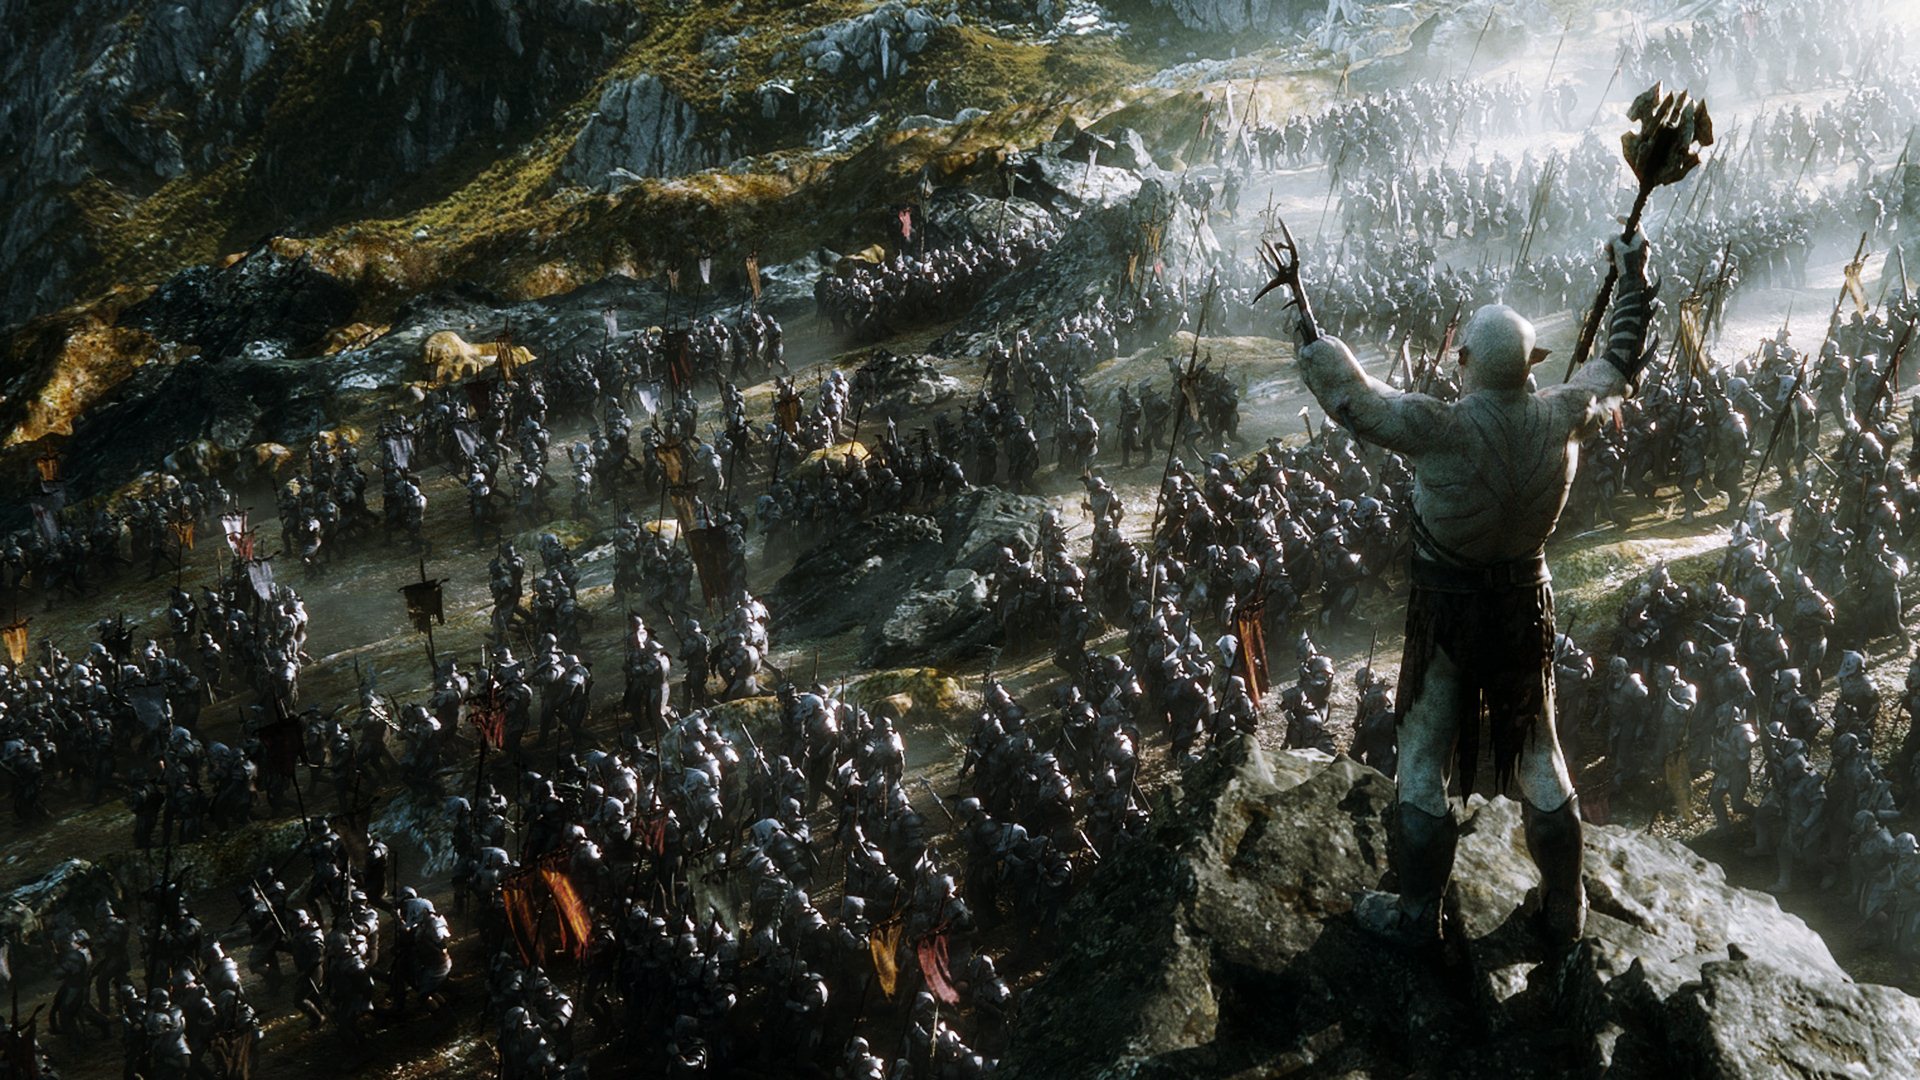 le hobbit  : où voir la bataille des cinq armées en hfr en france ?